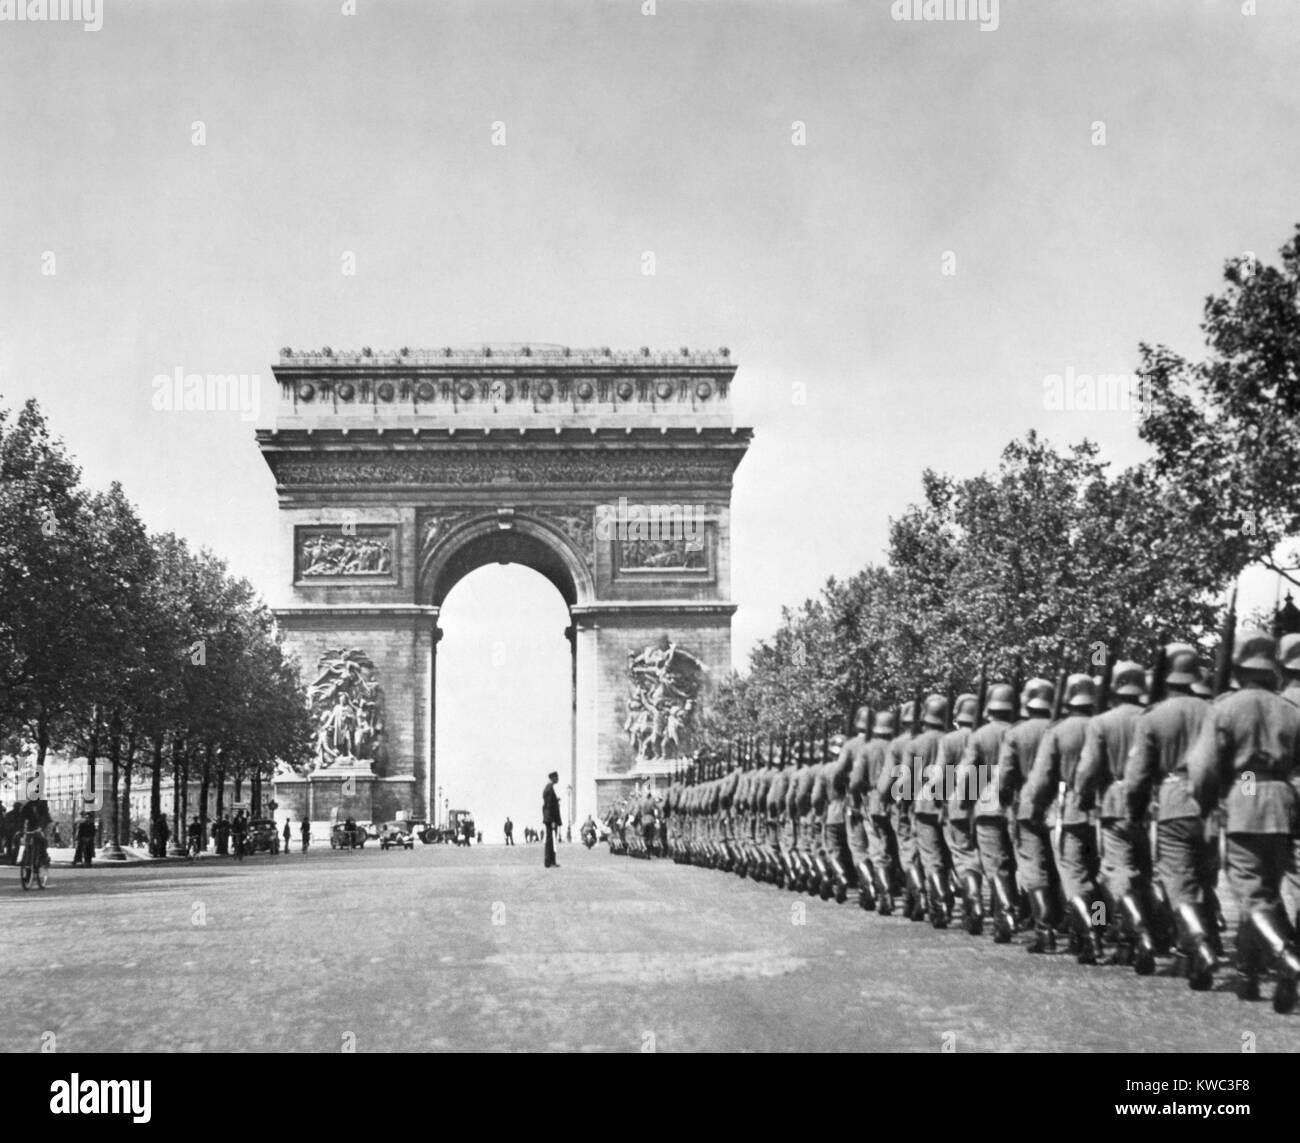 Deutsche Truppen marschieren in der Nähe von Arc de Triumph, während der nationalsozialistischen Besetzung von Paris. Sommer 1940, Weltkrieg 2 (BSLOC 2015 13 79) Stockfoto